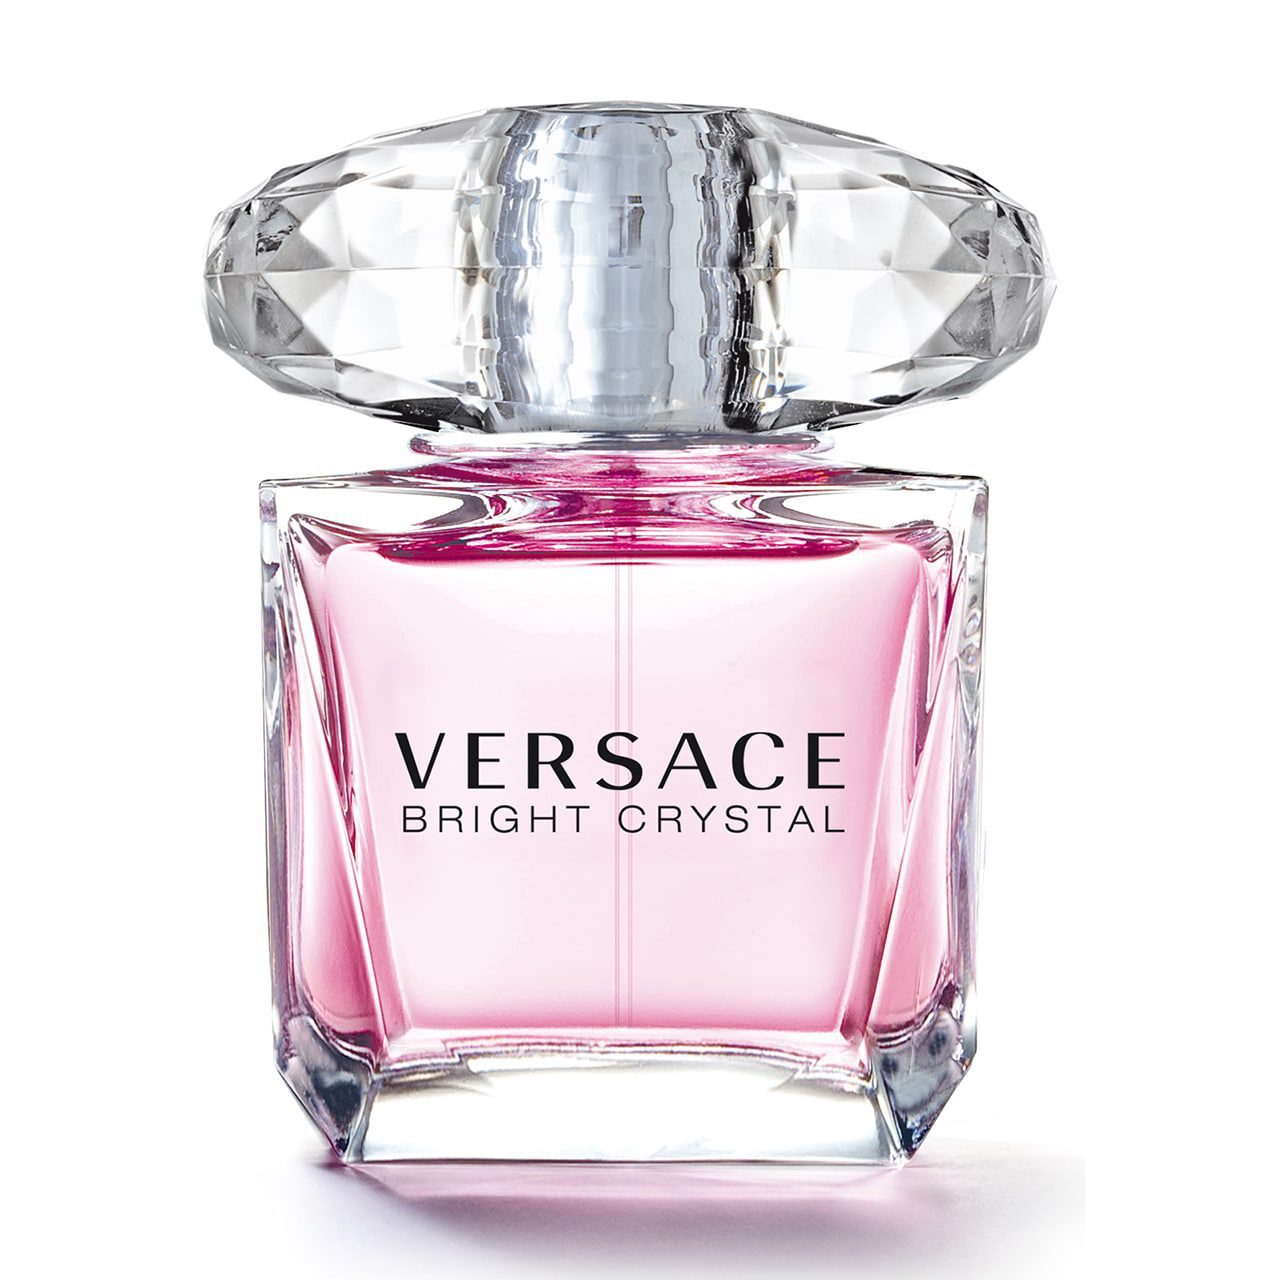 ادو تویلت زنانه ورساچه مدل برایت کریستال | Versace Bright Crystal حجم 90 میلی لیتر